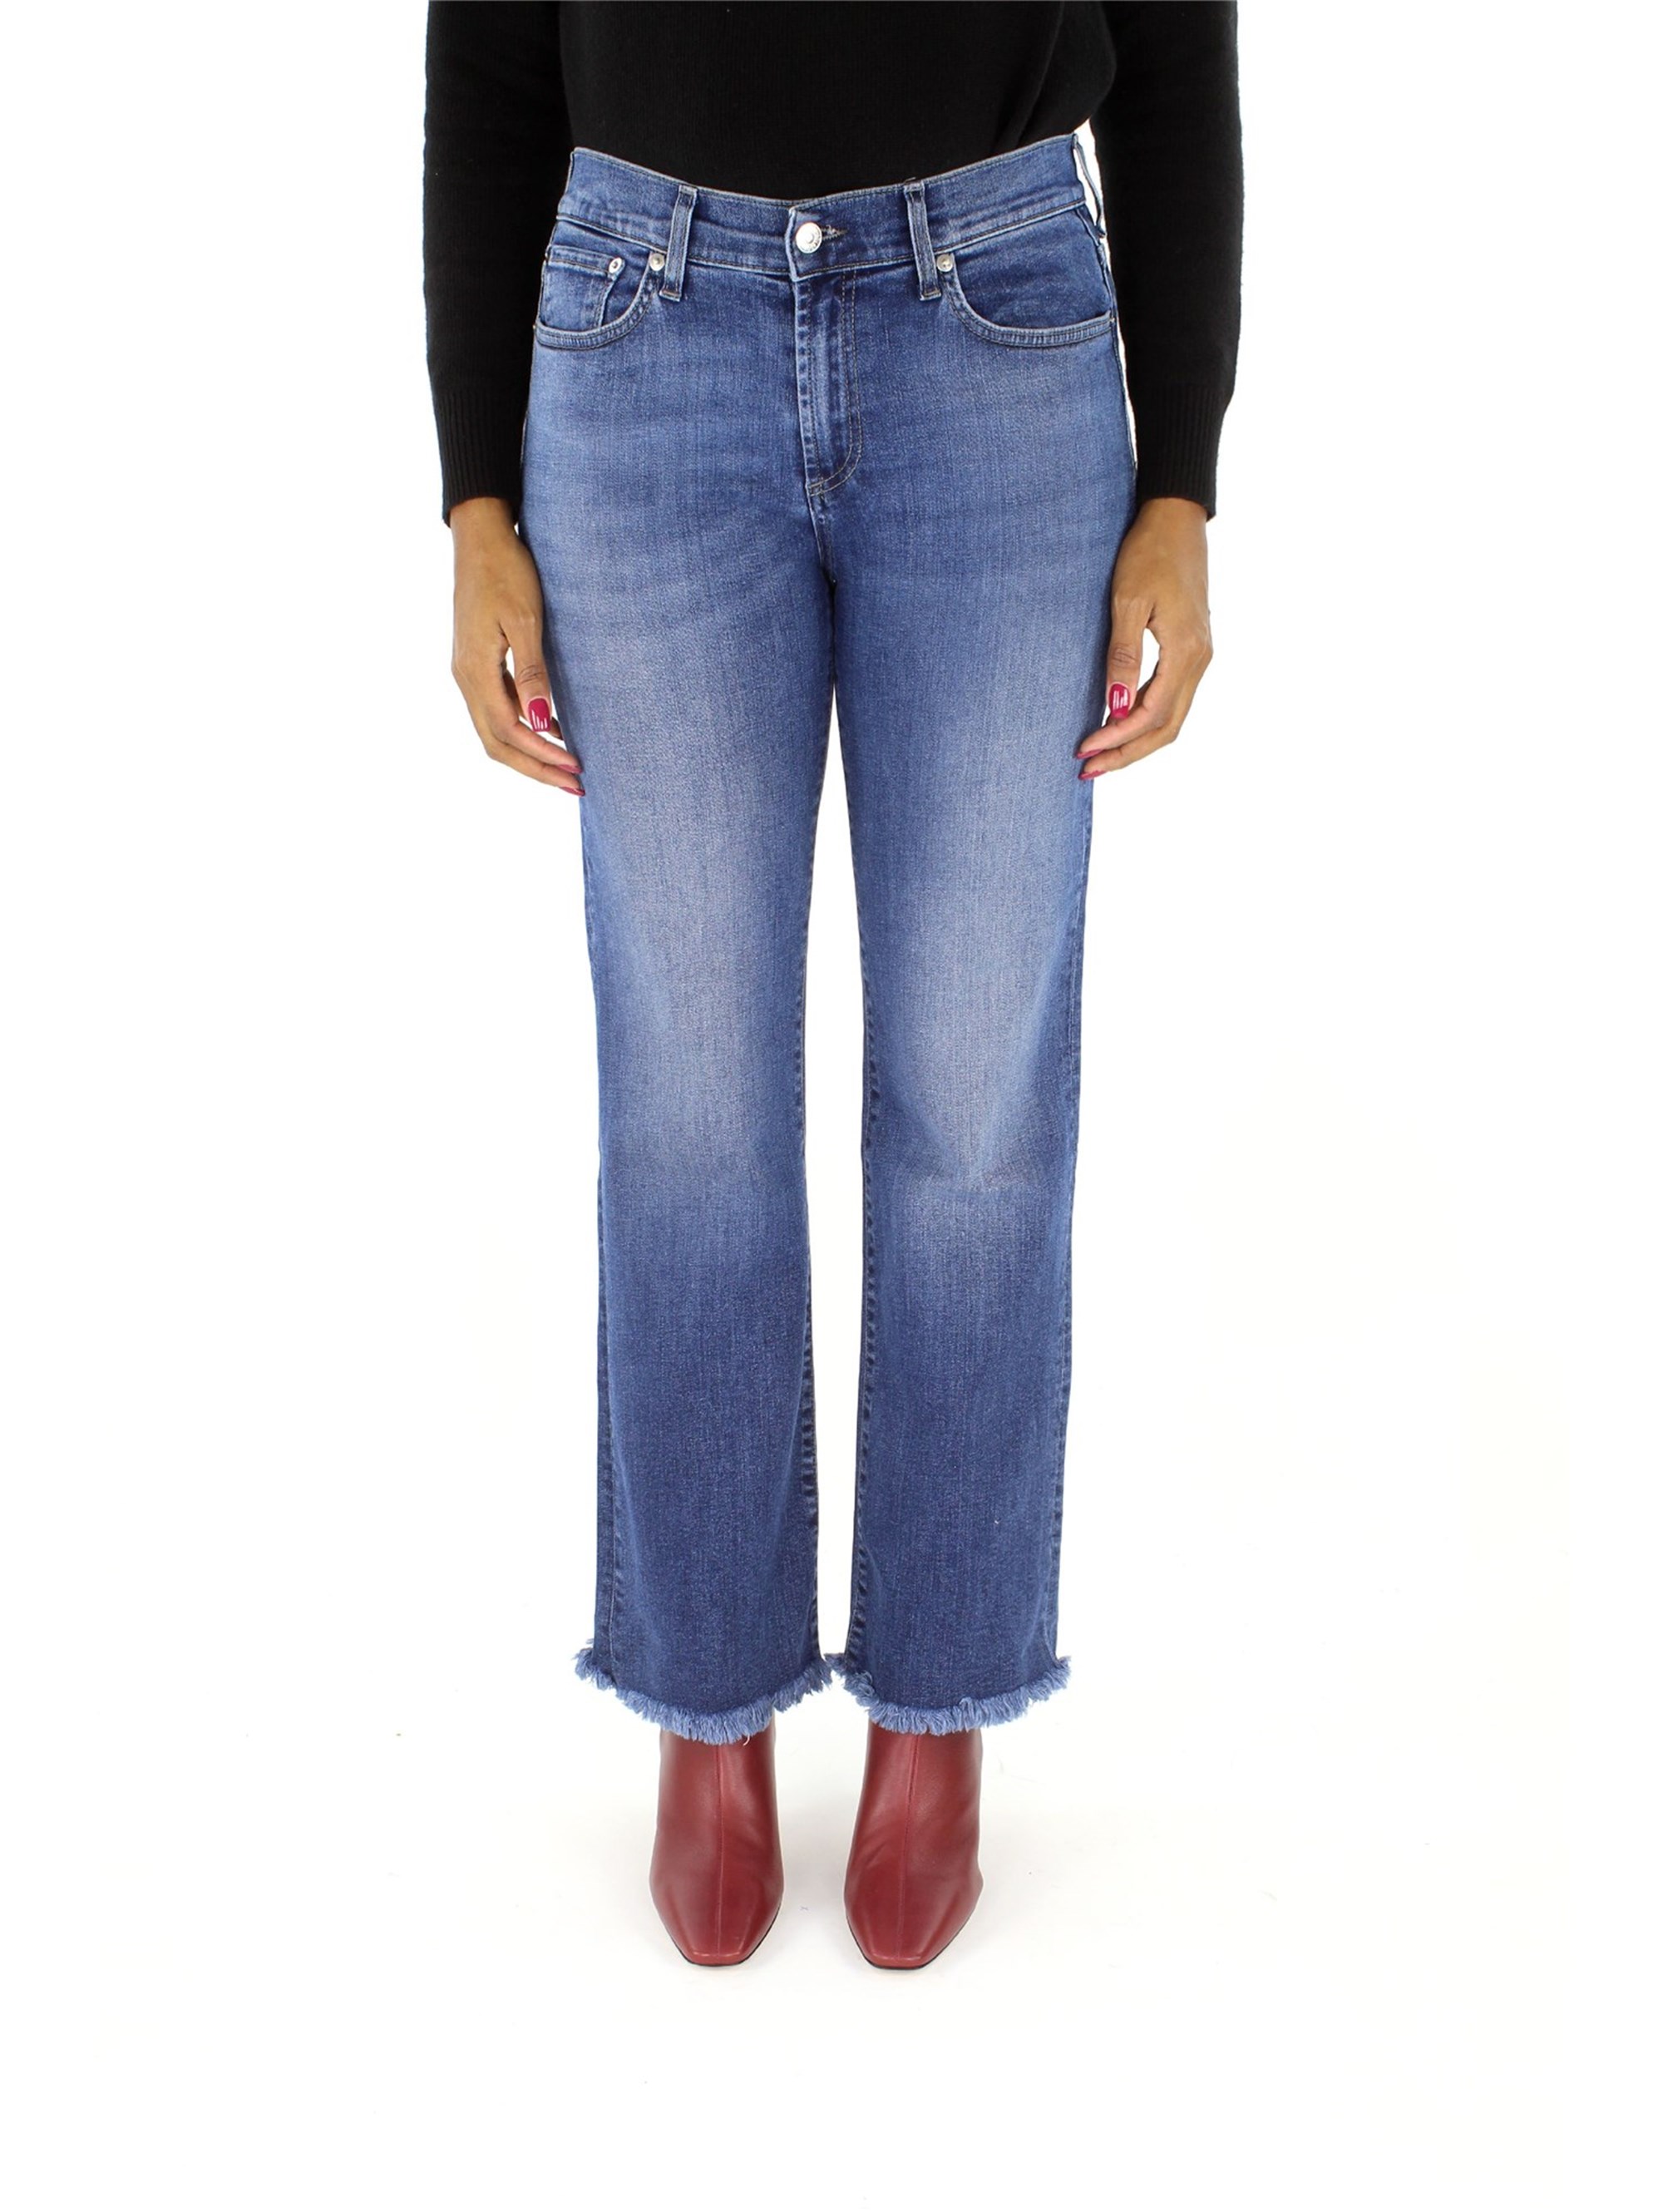 roy roger's Jeans Damen Denim günstig online kaufen